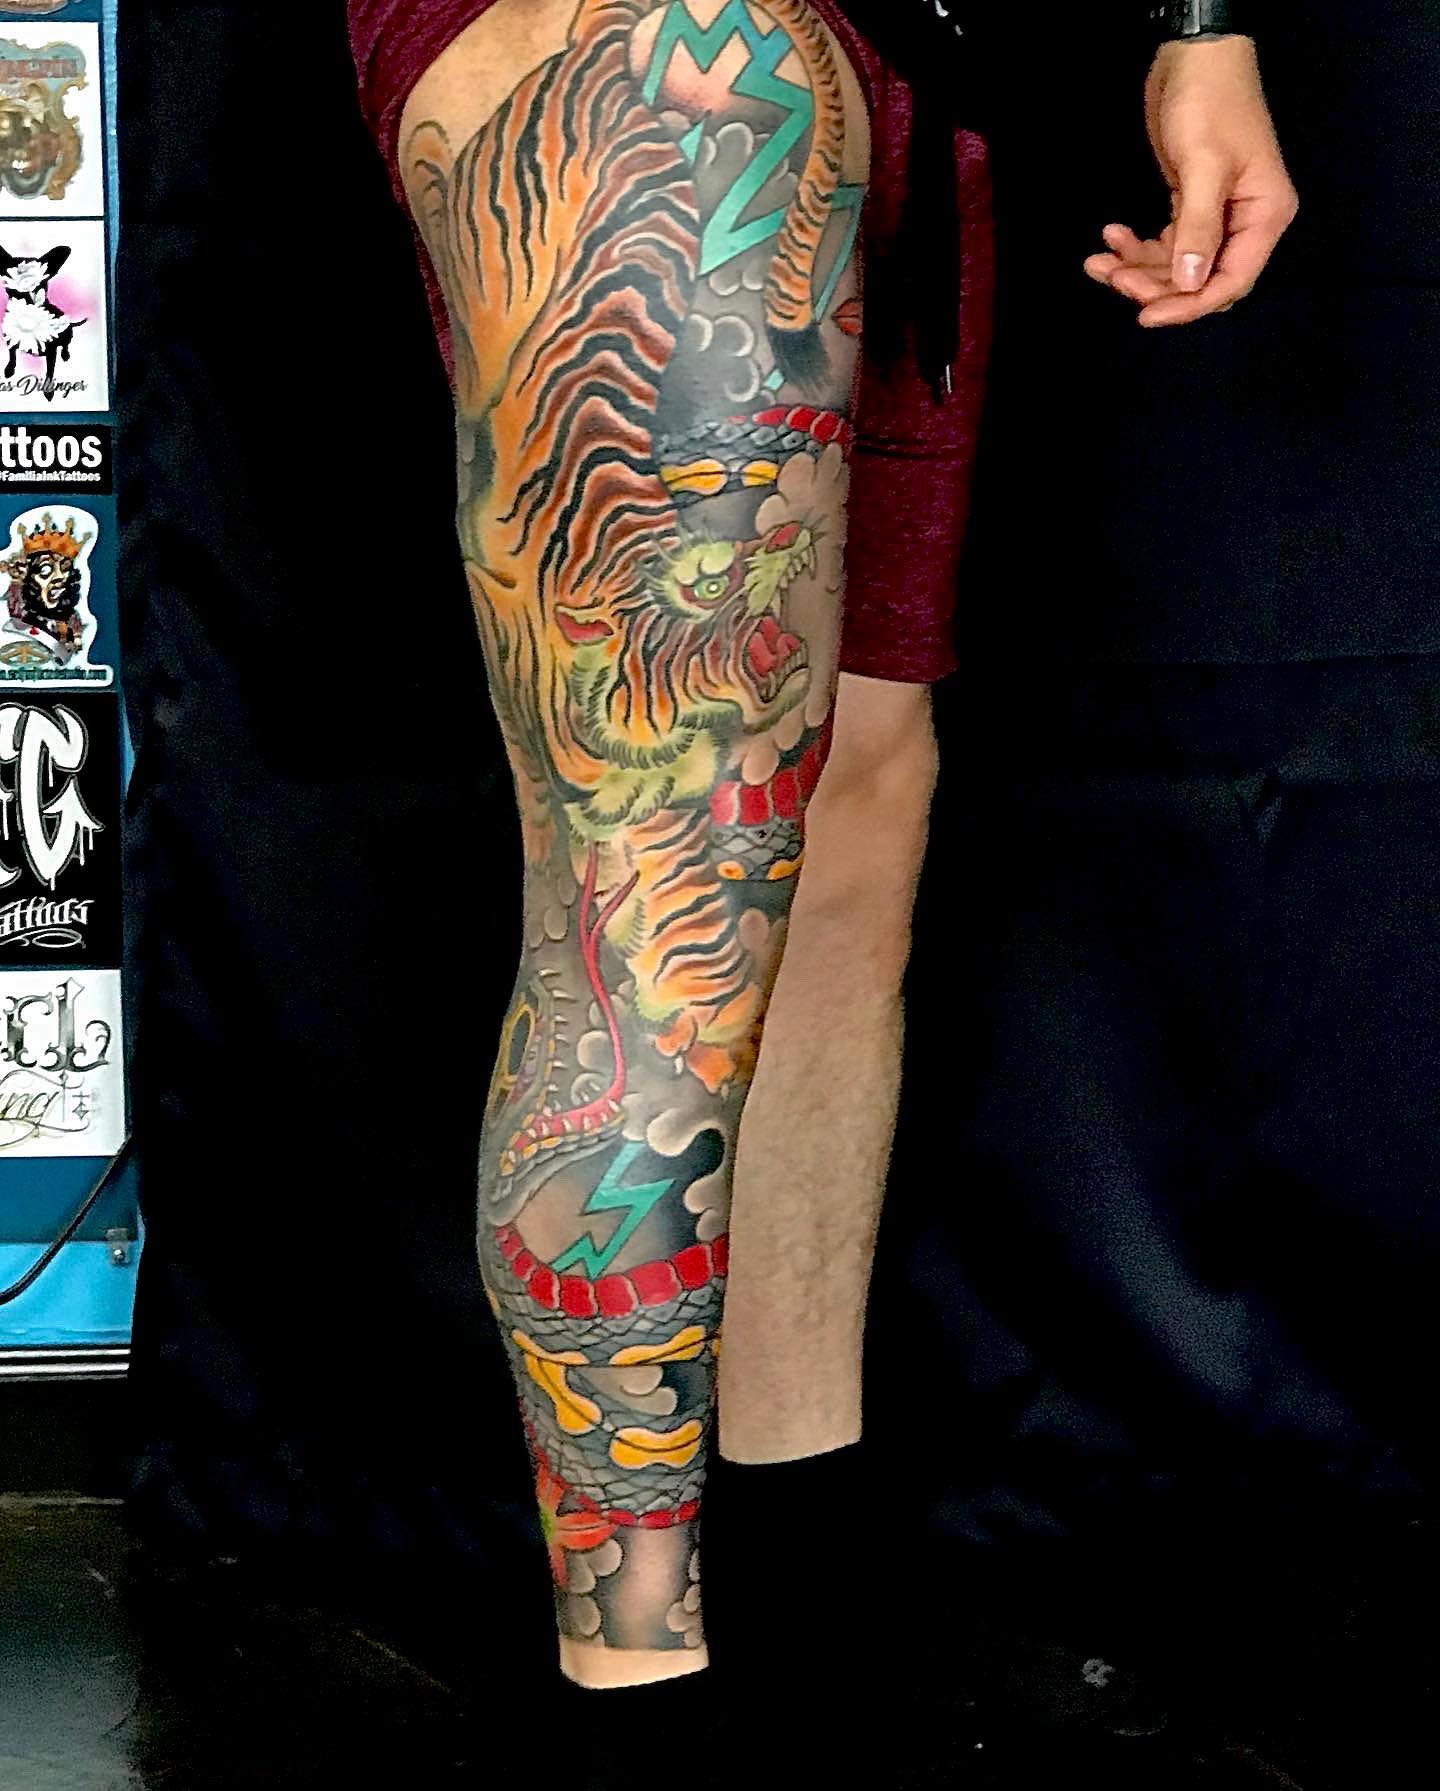 Meghan Ann Tattoo Artist - True Blue Tattoo Studio